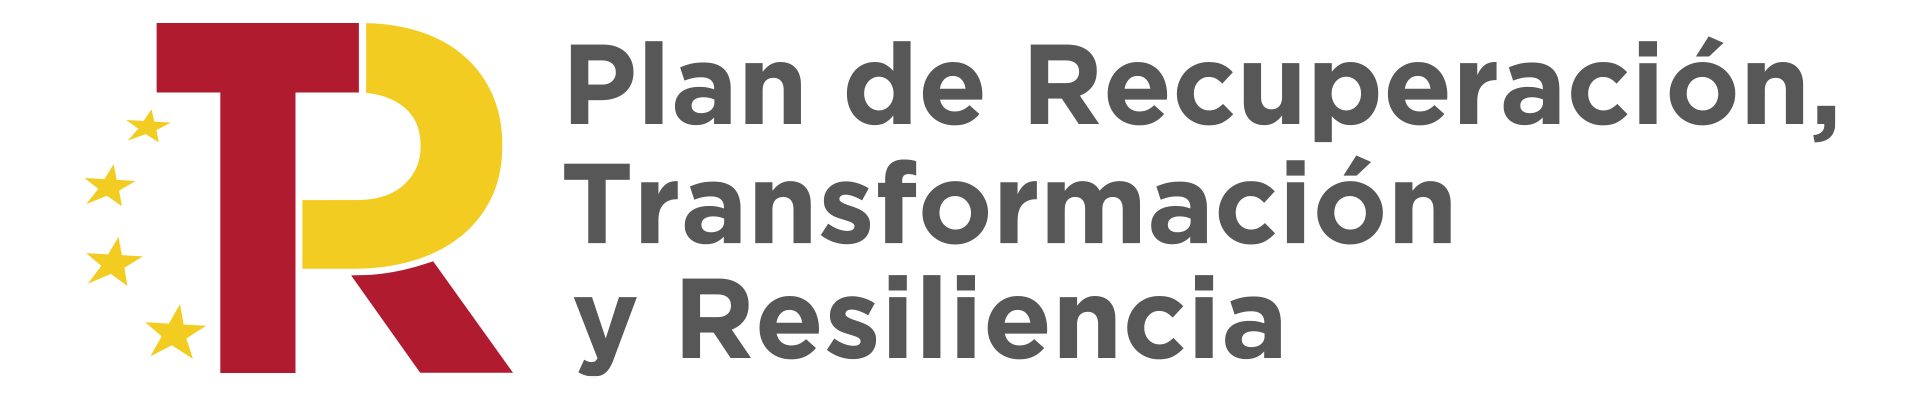 Plan de Recuperacion Transformacion y Resiliencia